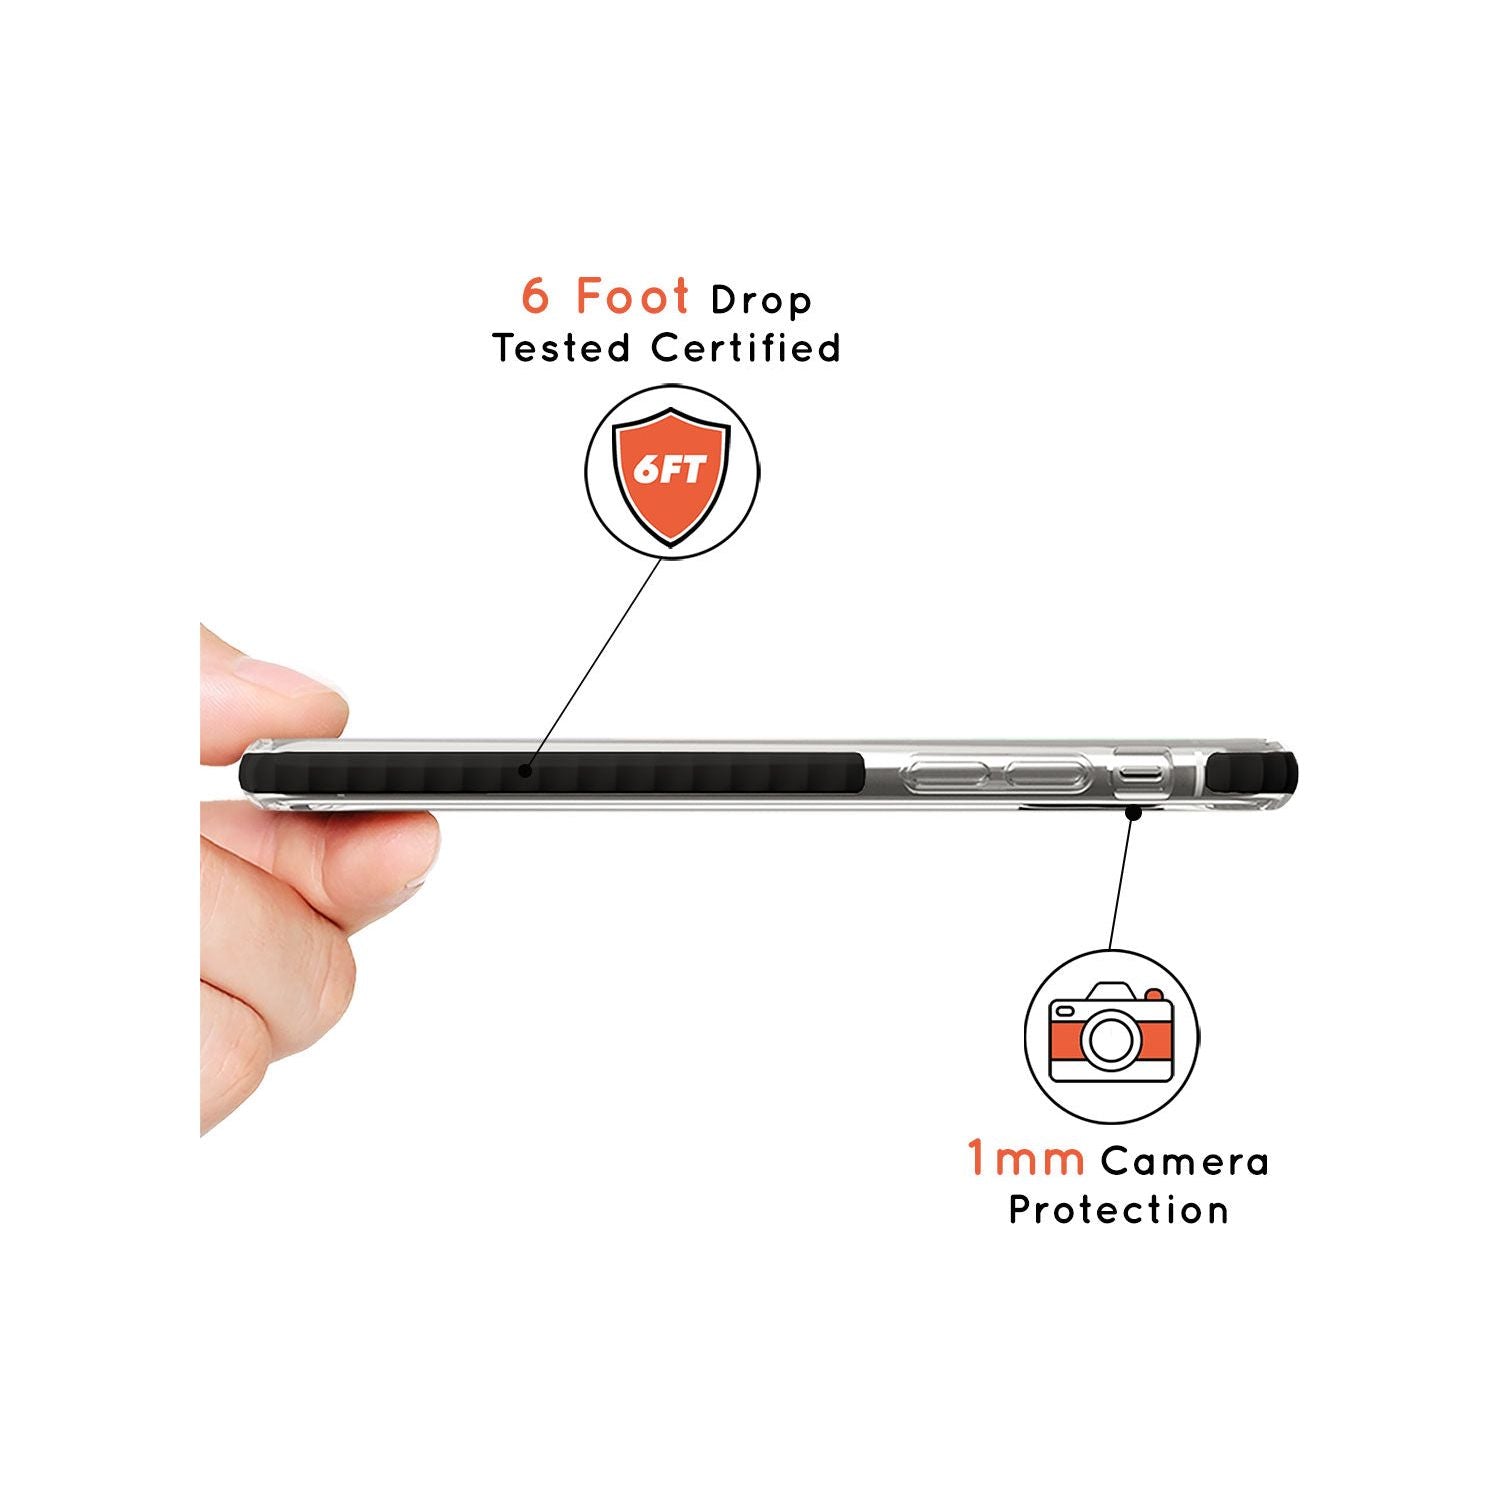 Virgo Emblem - Transparent Design Black Impact Phone Case for iPhone 11 Pro Max